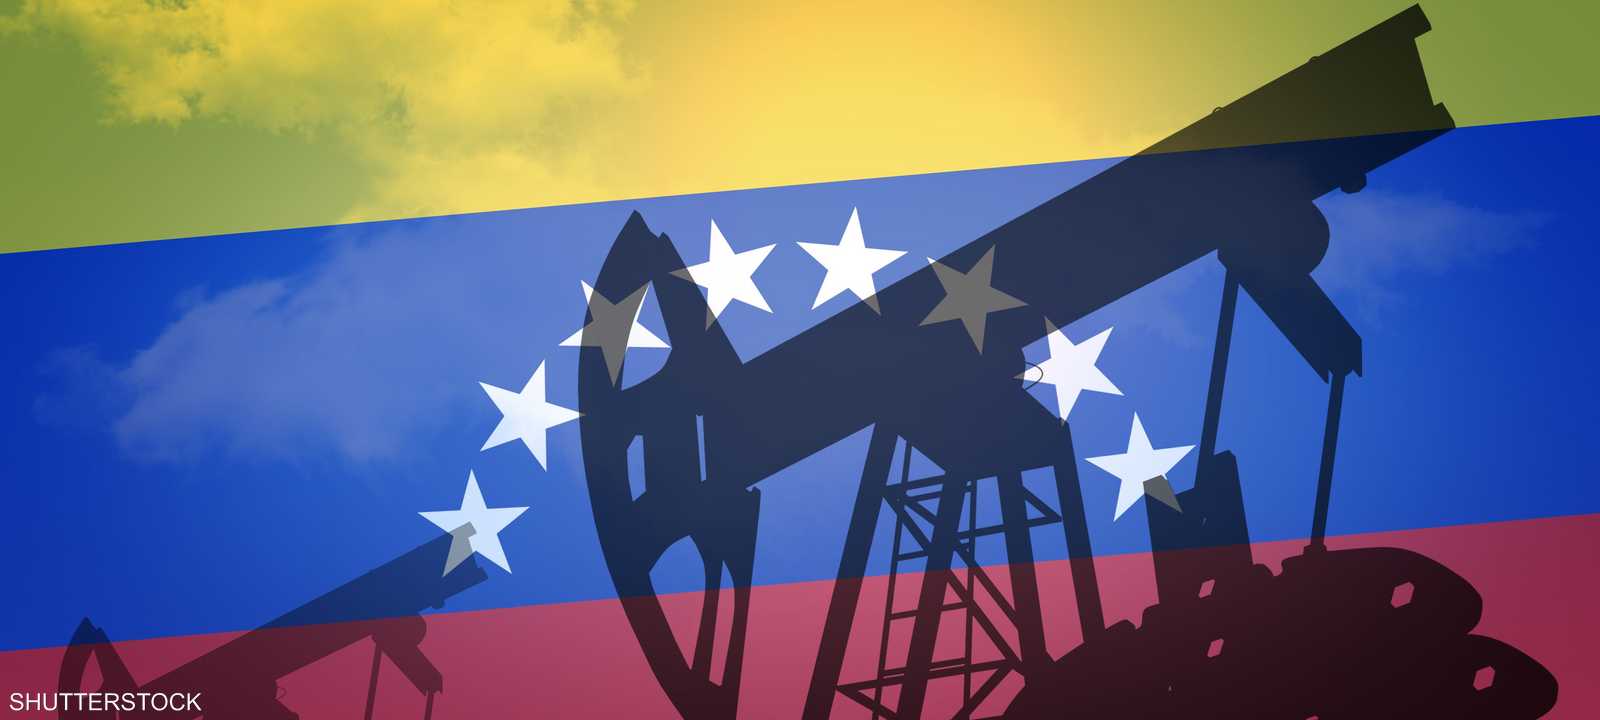 فنزويلا لديها أكبر احتياطي نفطي في العالم